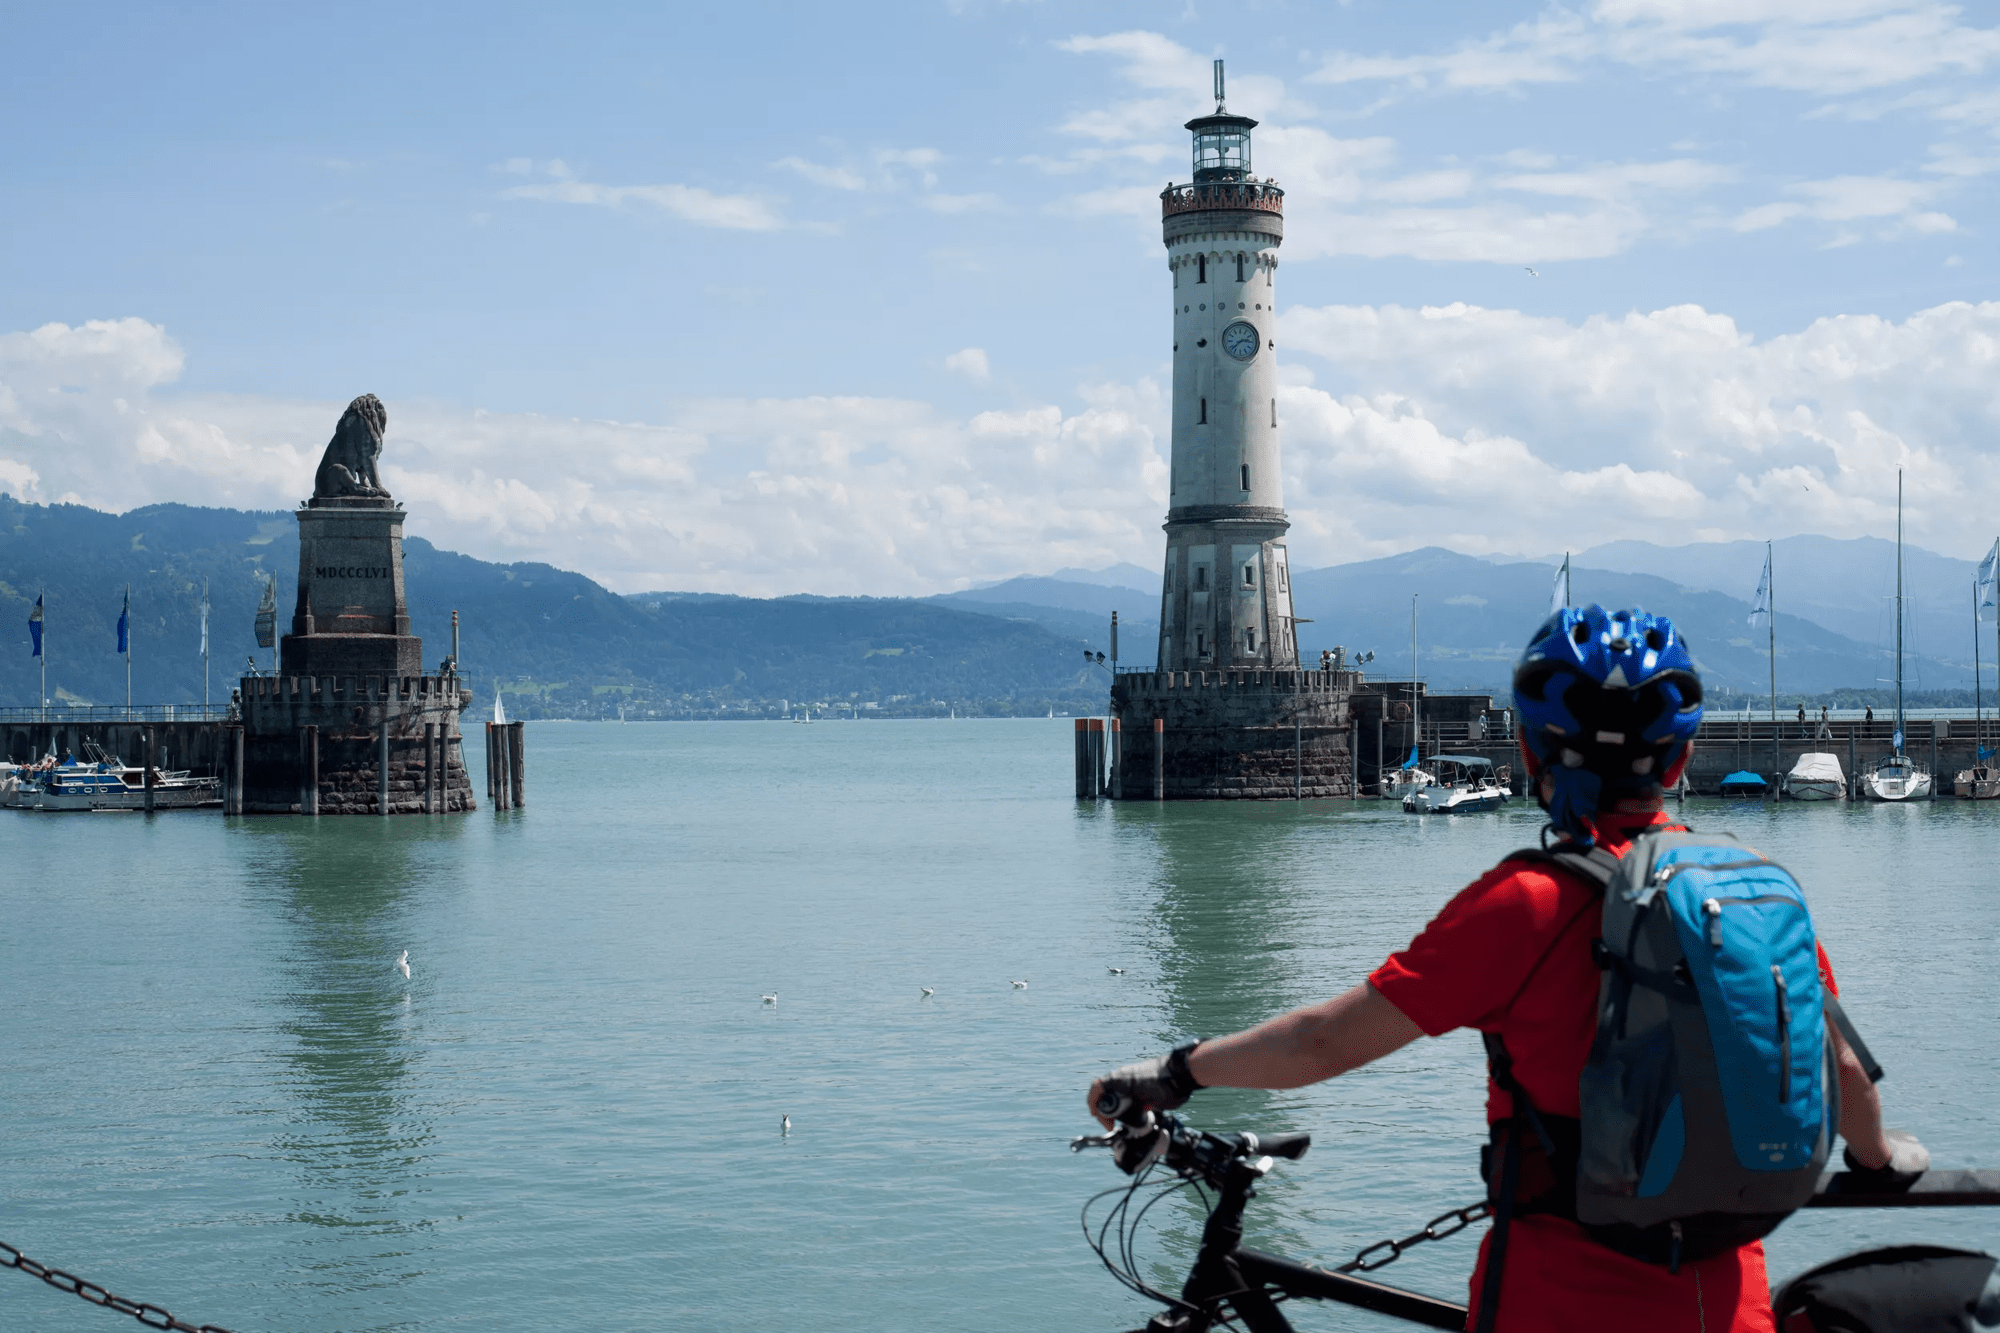 8-daagse fietsrondreis rondje Bodensee door drie landen - 